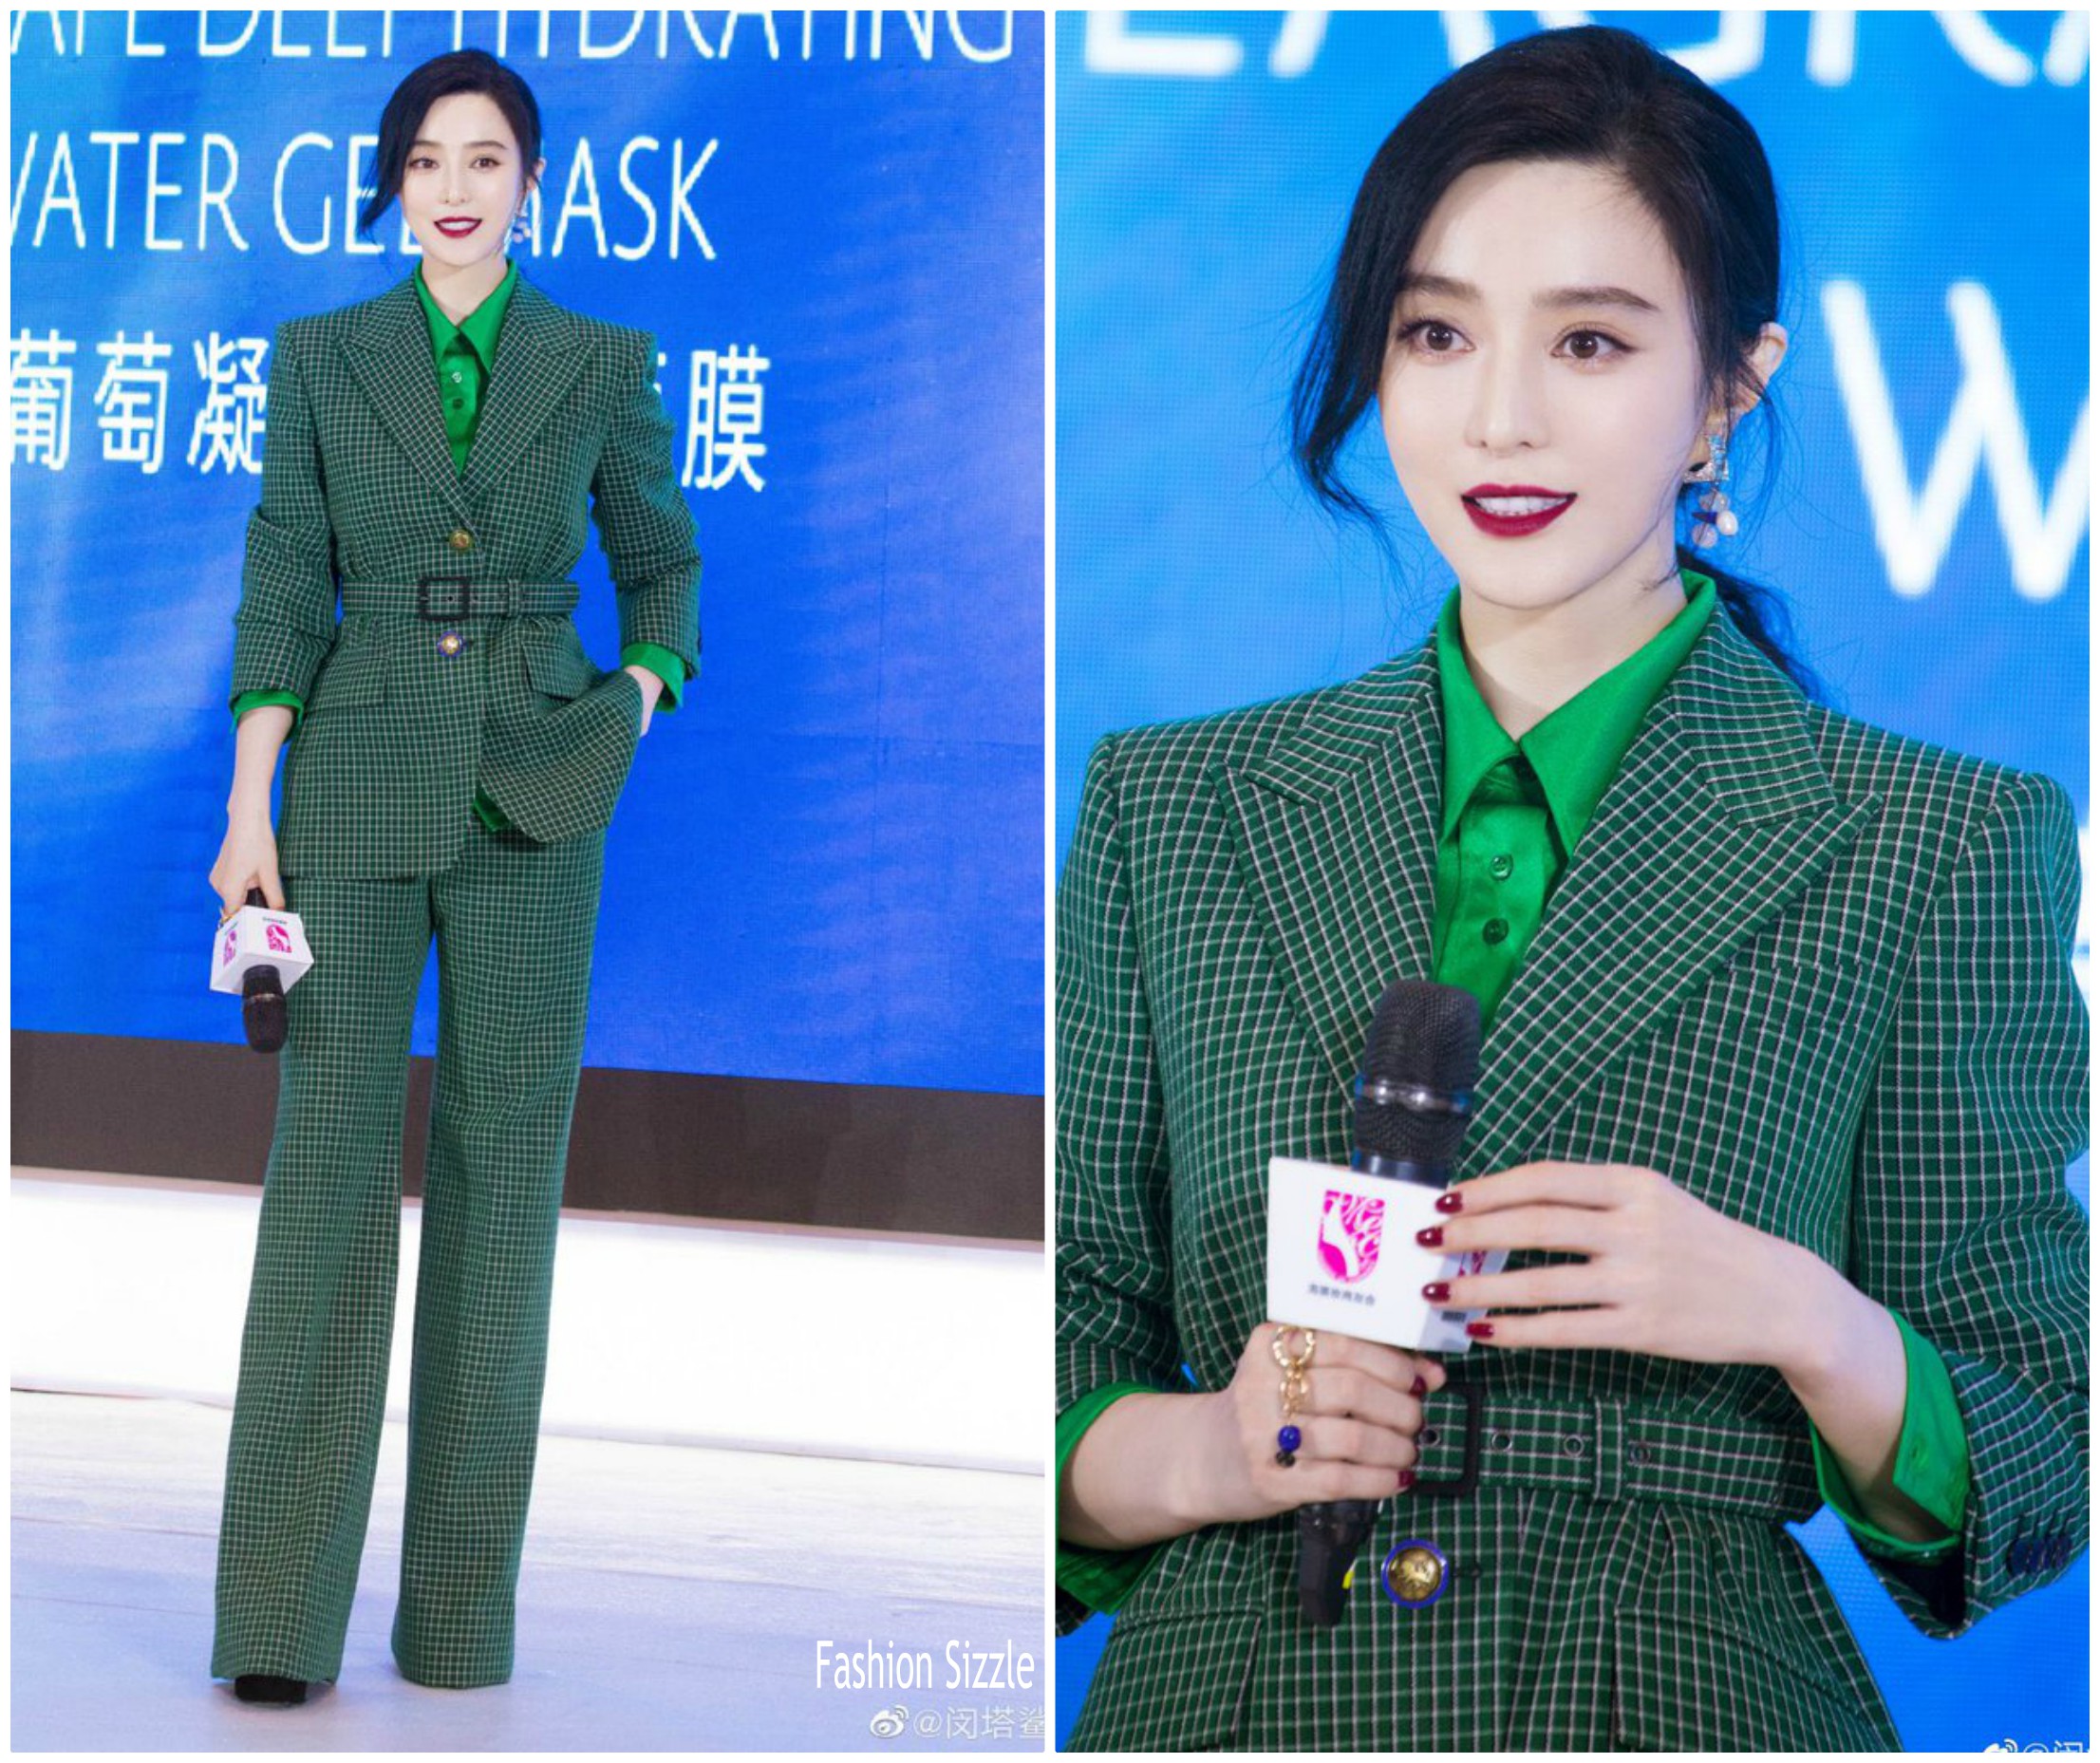 fan-bingbing-in-givenchy-suit-shanghai-beauty-summit-2019